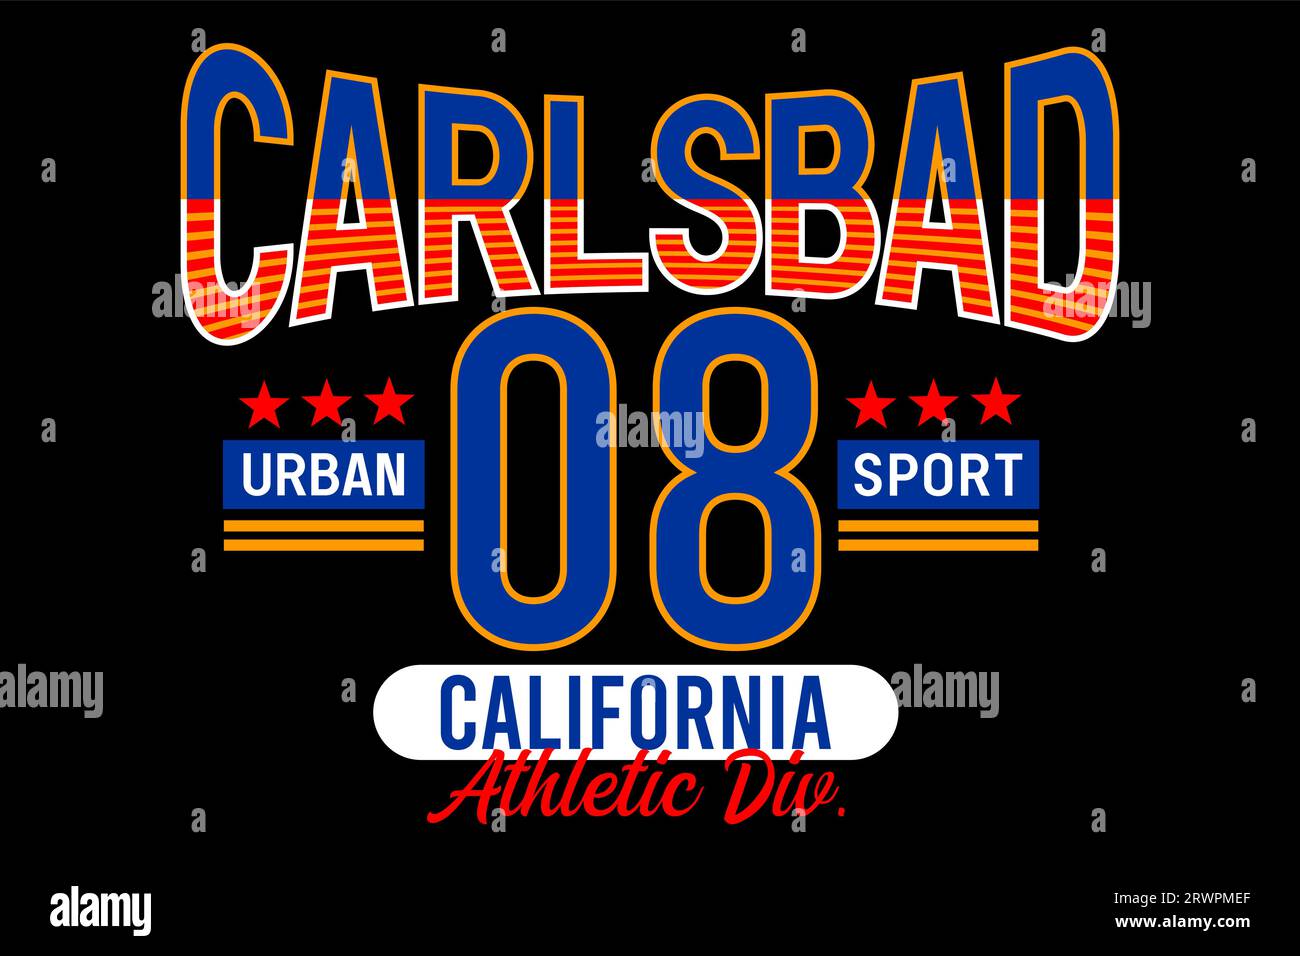 carlsbad sport californie athlentique, style urbain, collège vintage pour t-shirt, affiches, étiquettes, etc. conception vectorielle Illustration de Vecteur